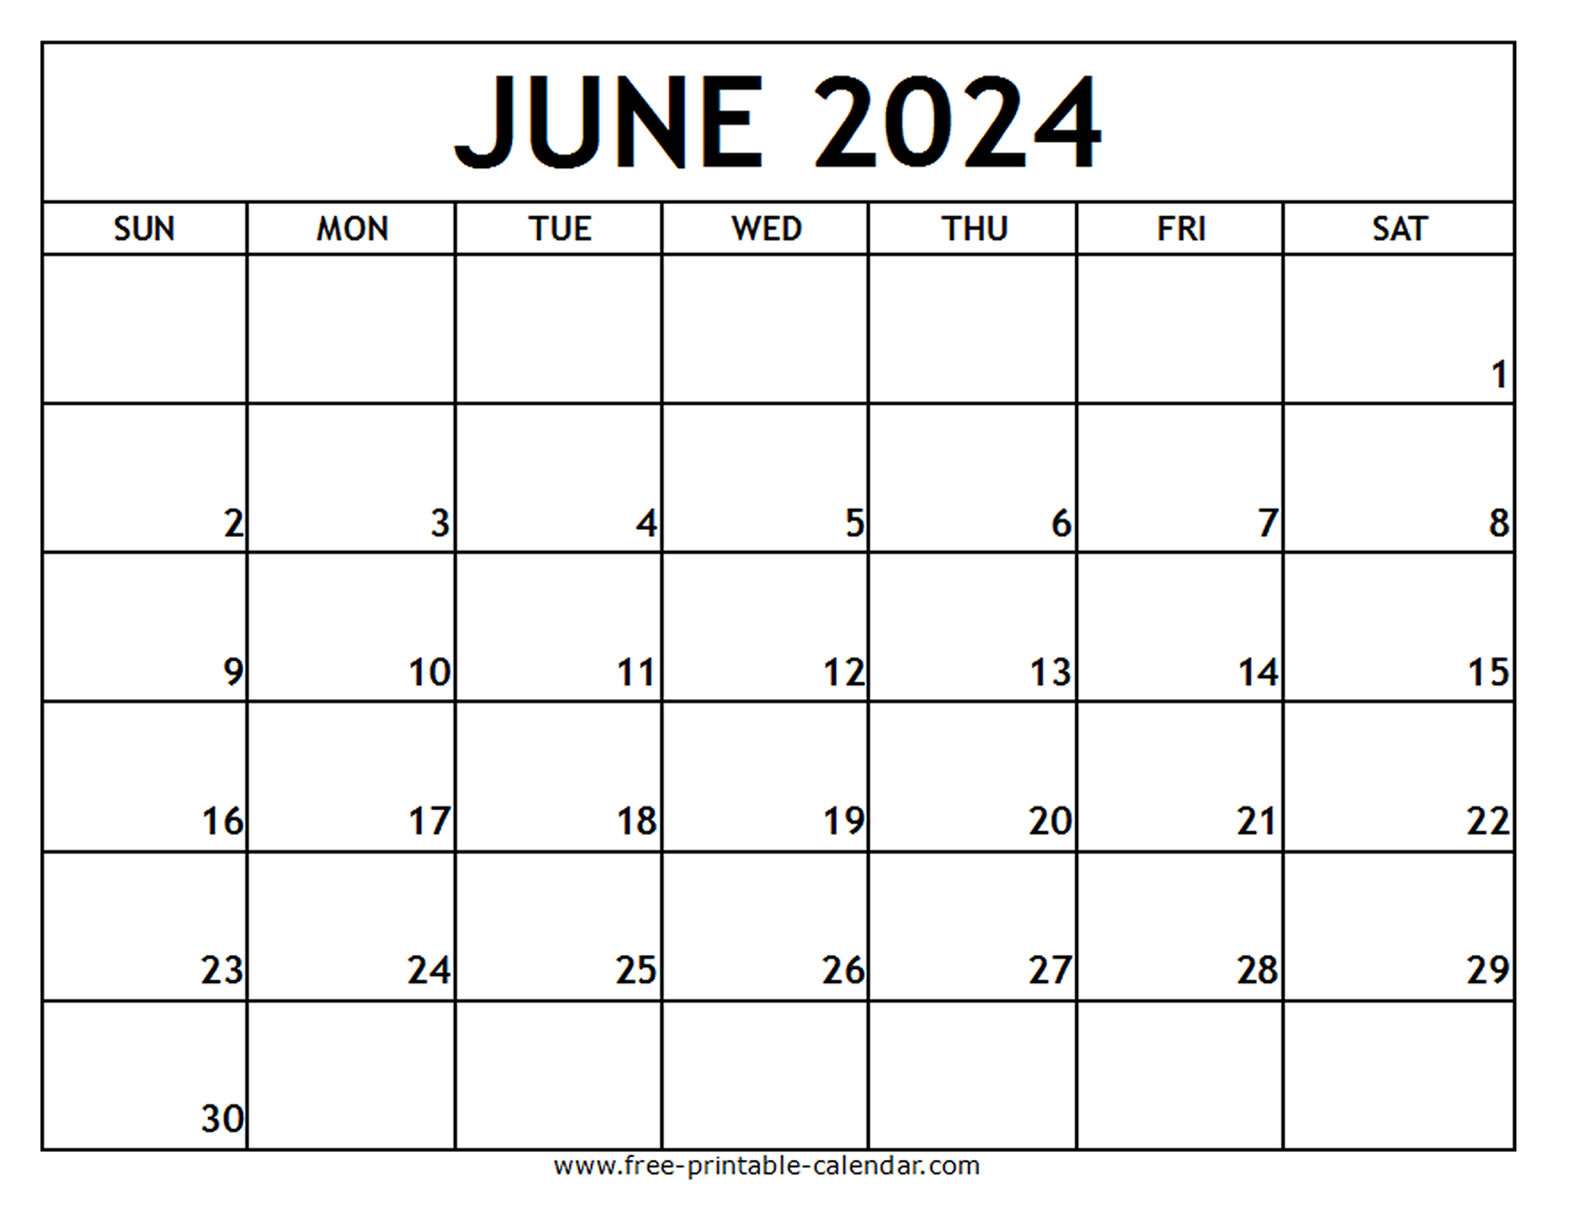 June 2024 Printable Calendar - Free-Printable-Calendar within June 2024 Calendar Download